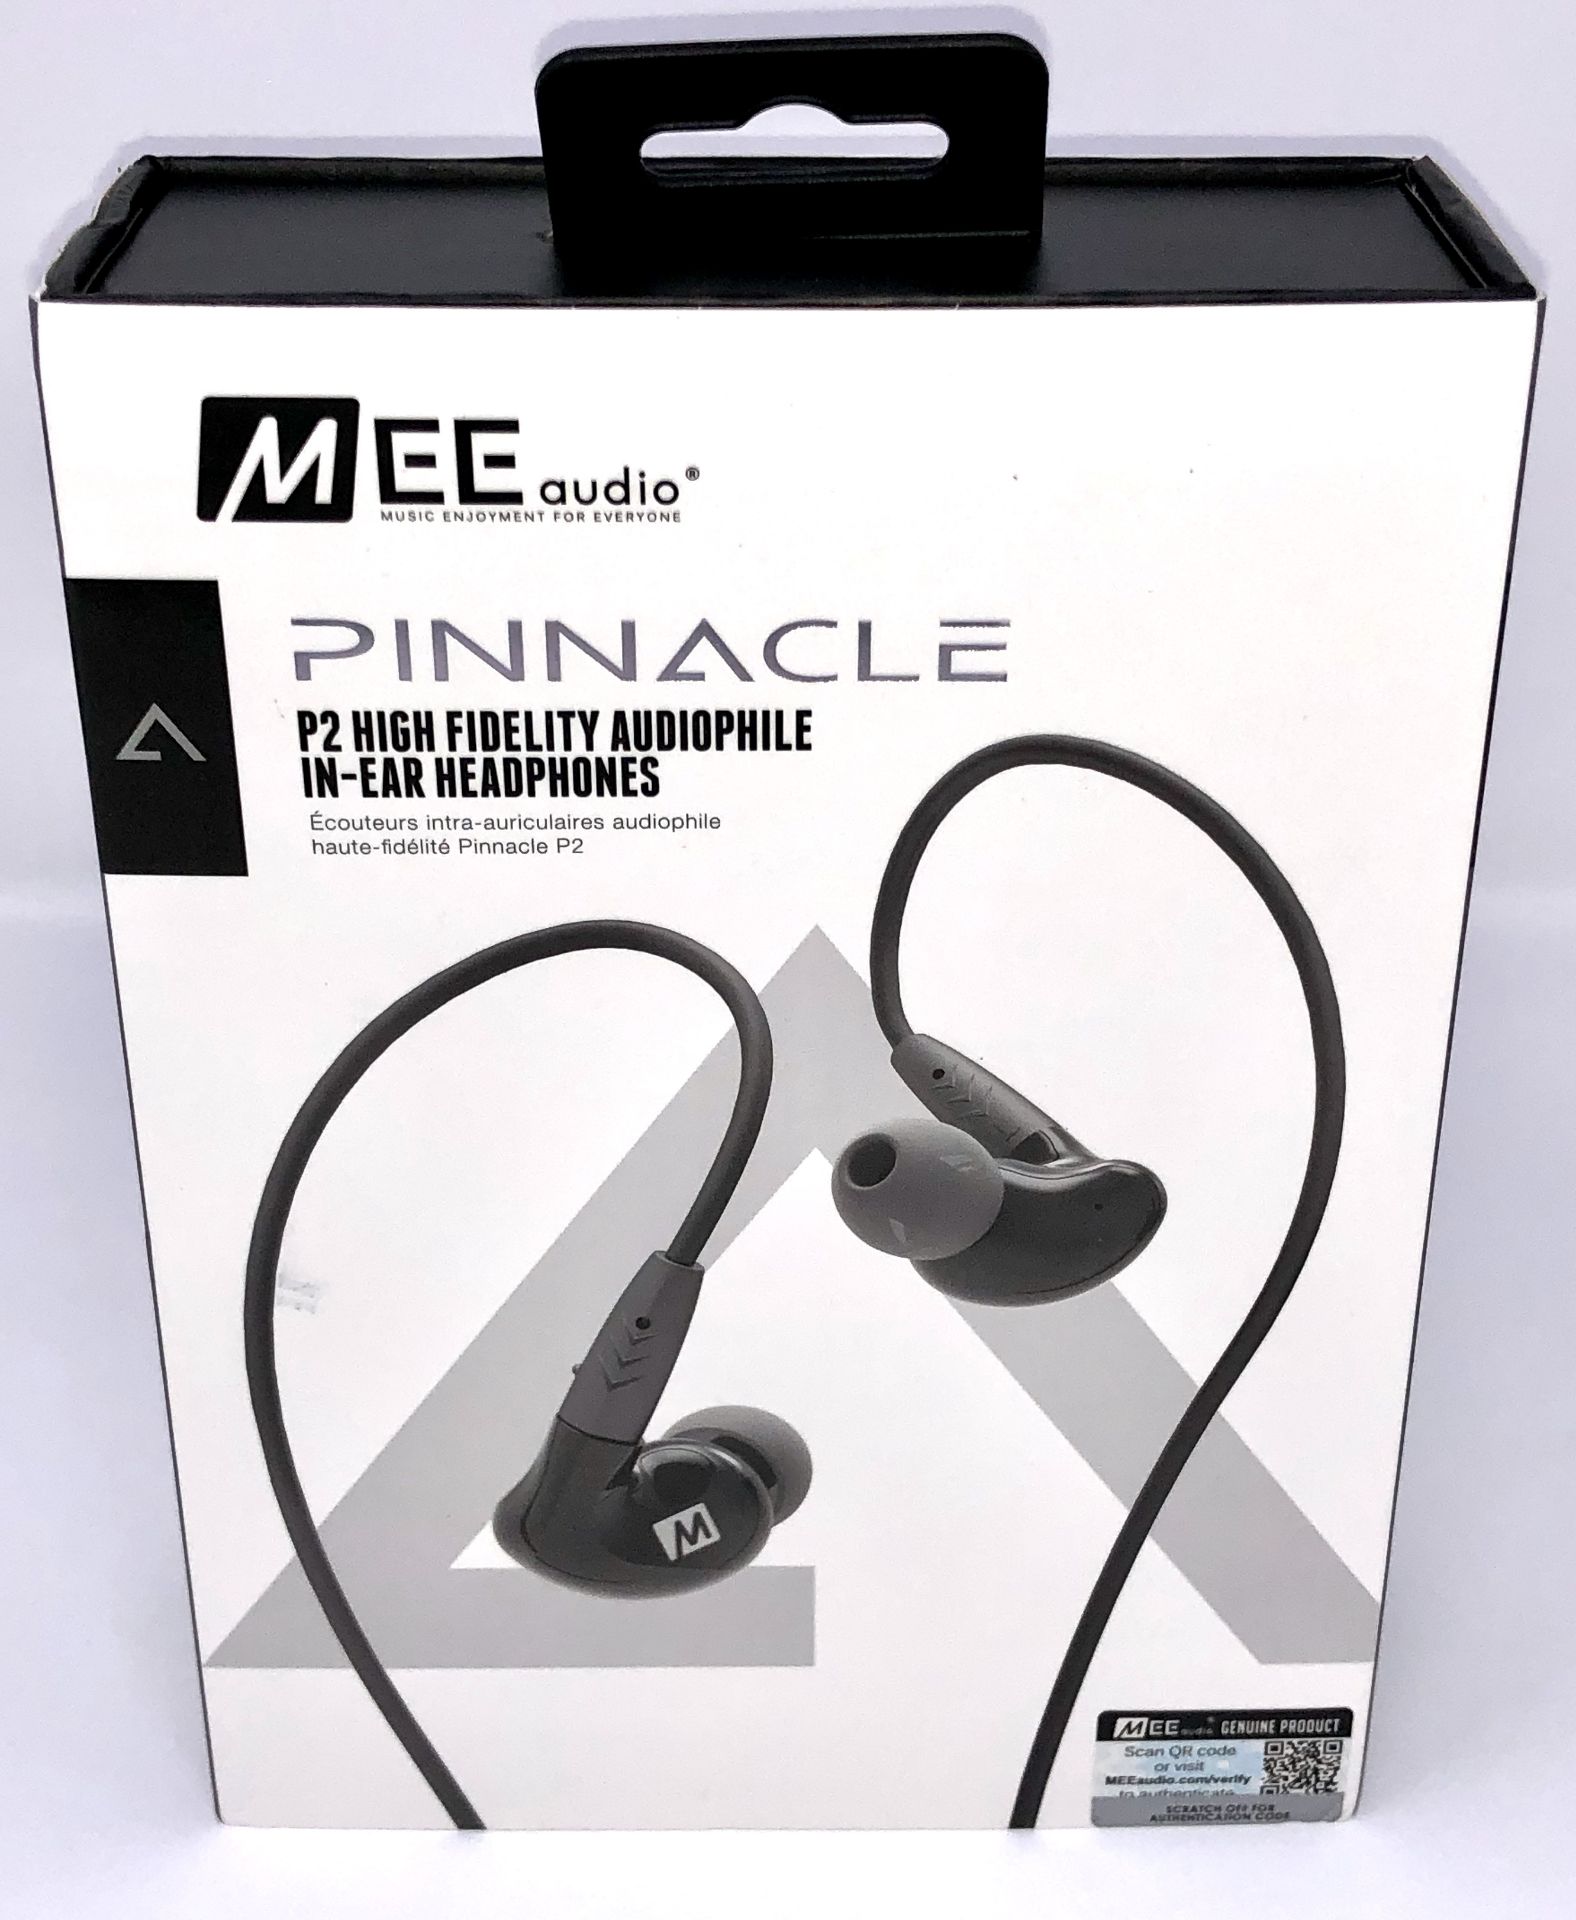 A boxed as new pair of MEE audio Pinnacle P2 High Fidelity Audiophile In-Ear Headphones in Black (